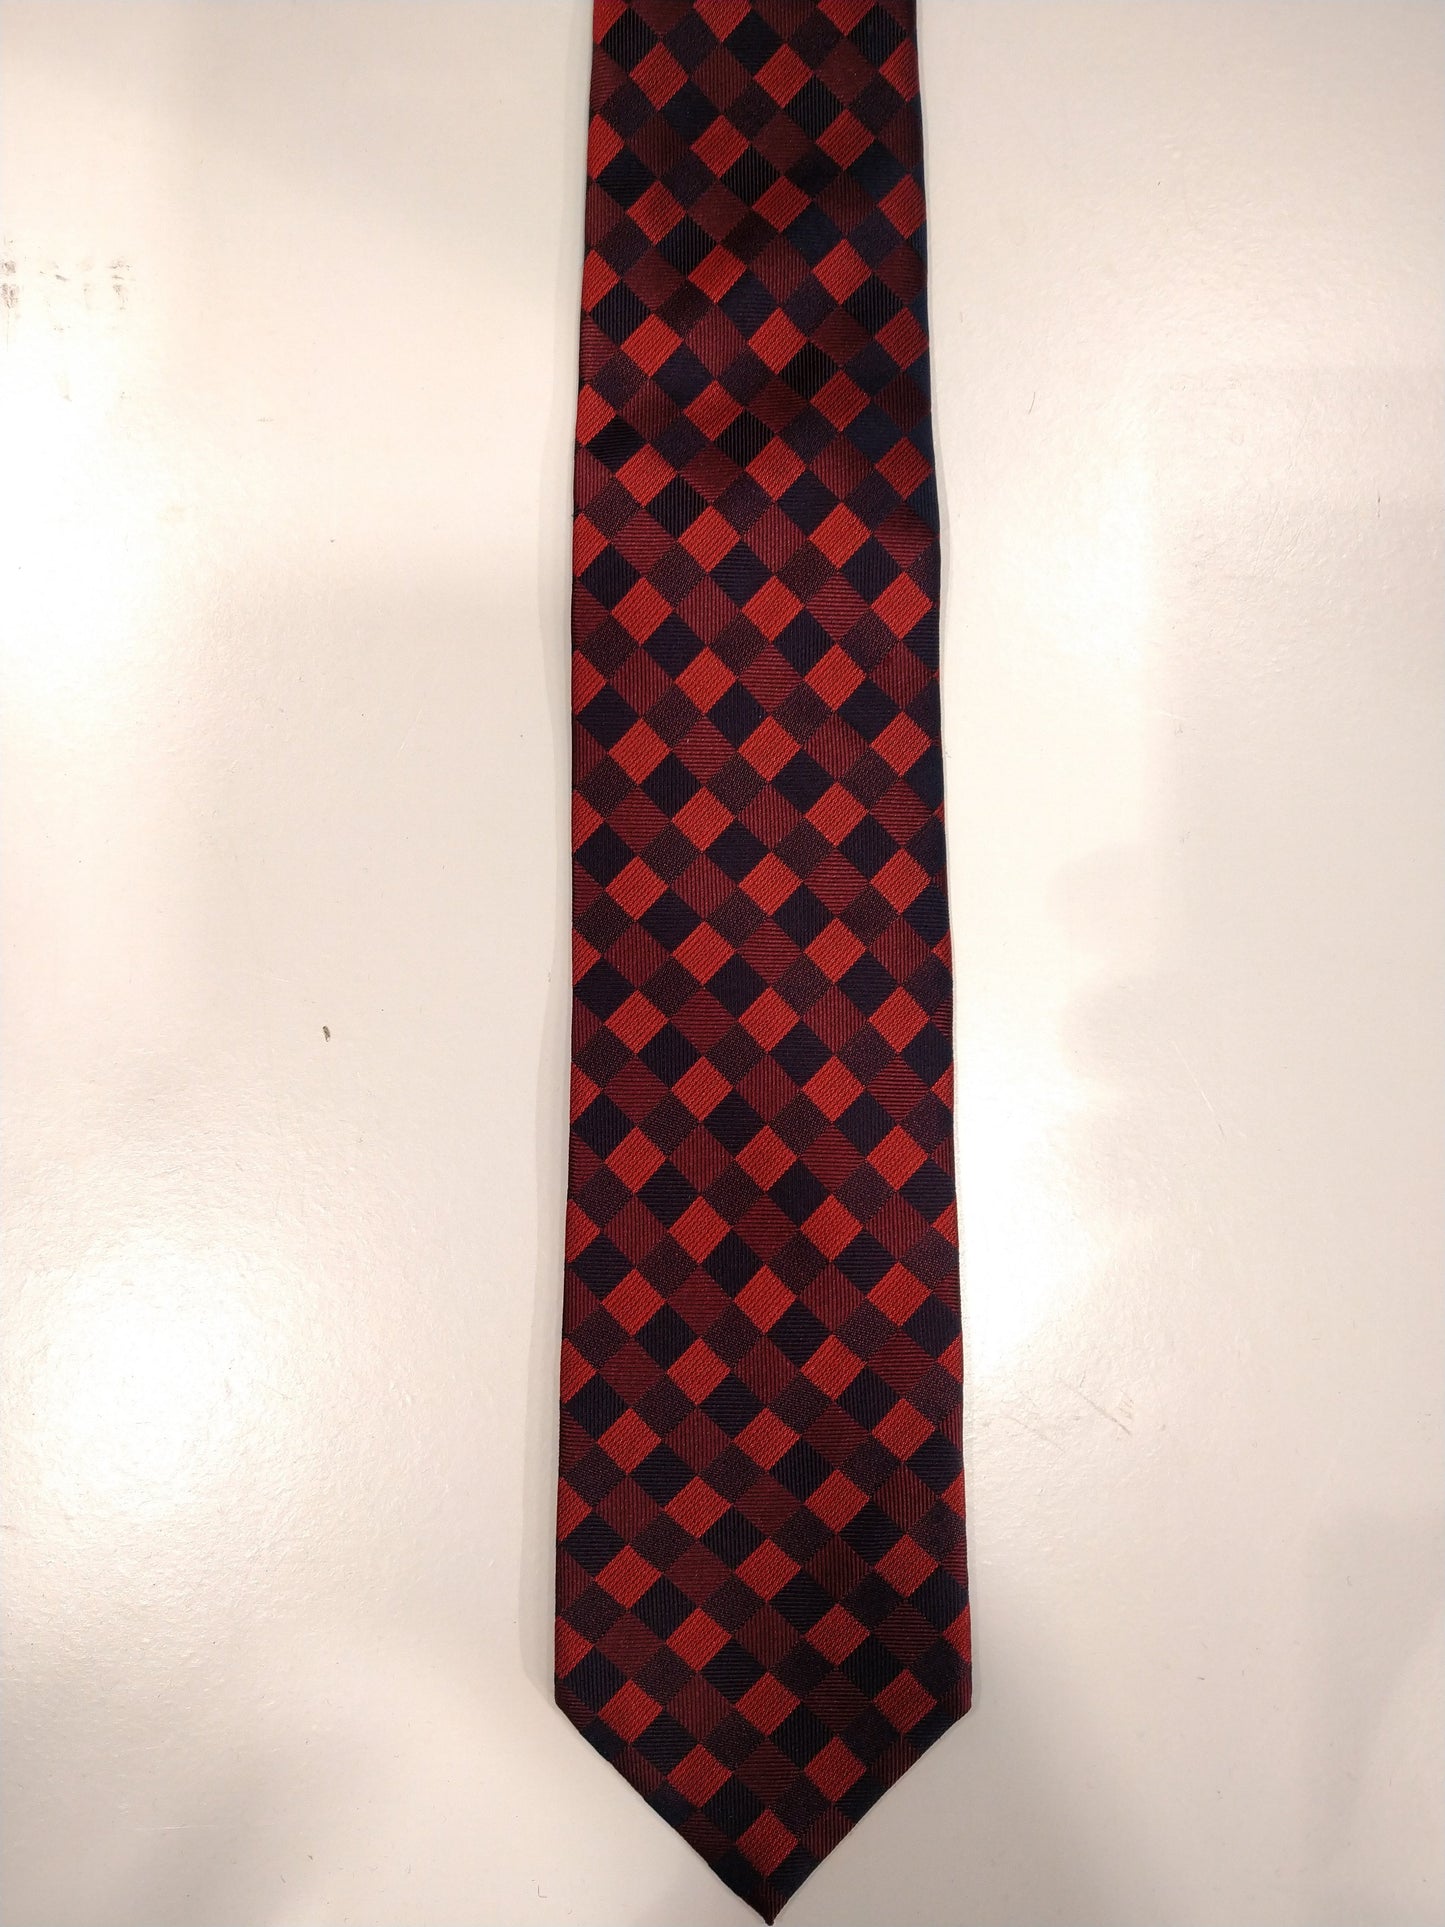 Cravatta di seta Liv. Motivo a scacchi nero rosso.